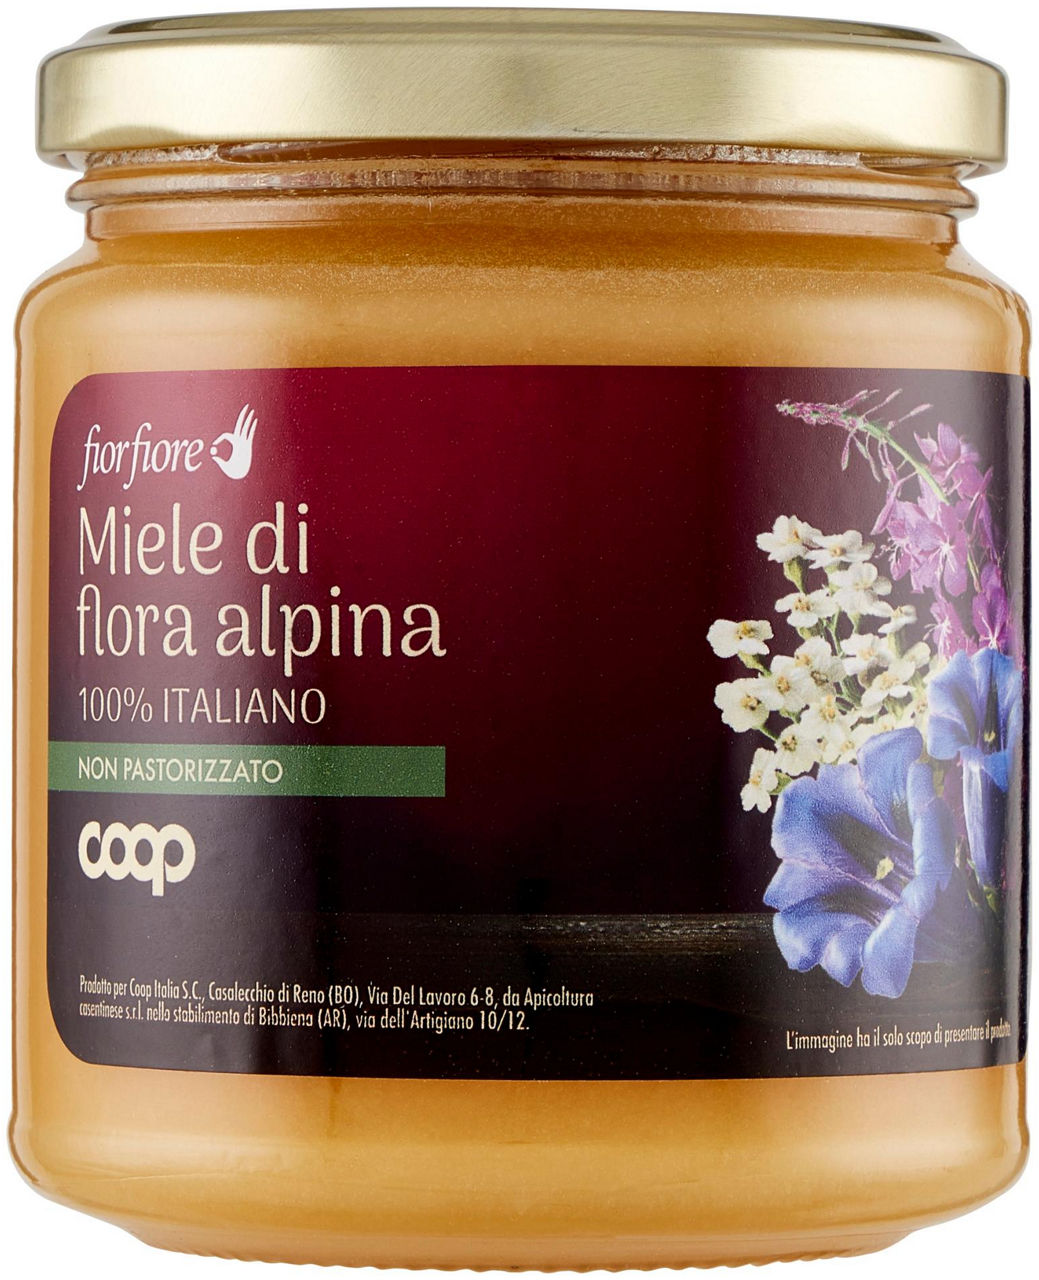 Miele di flora alpina fior fiore coop vaso vetro g 400